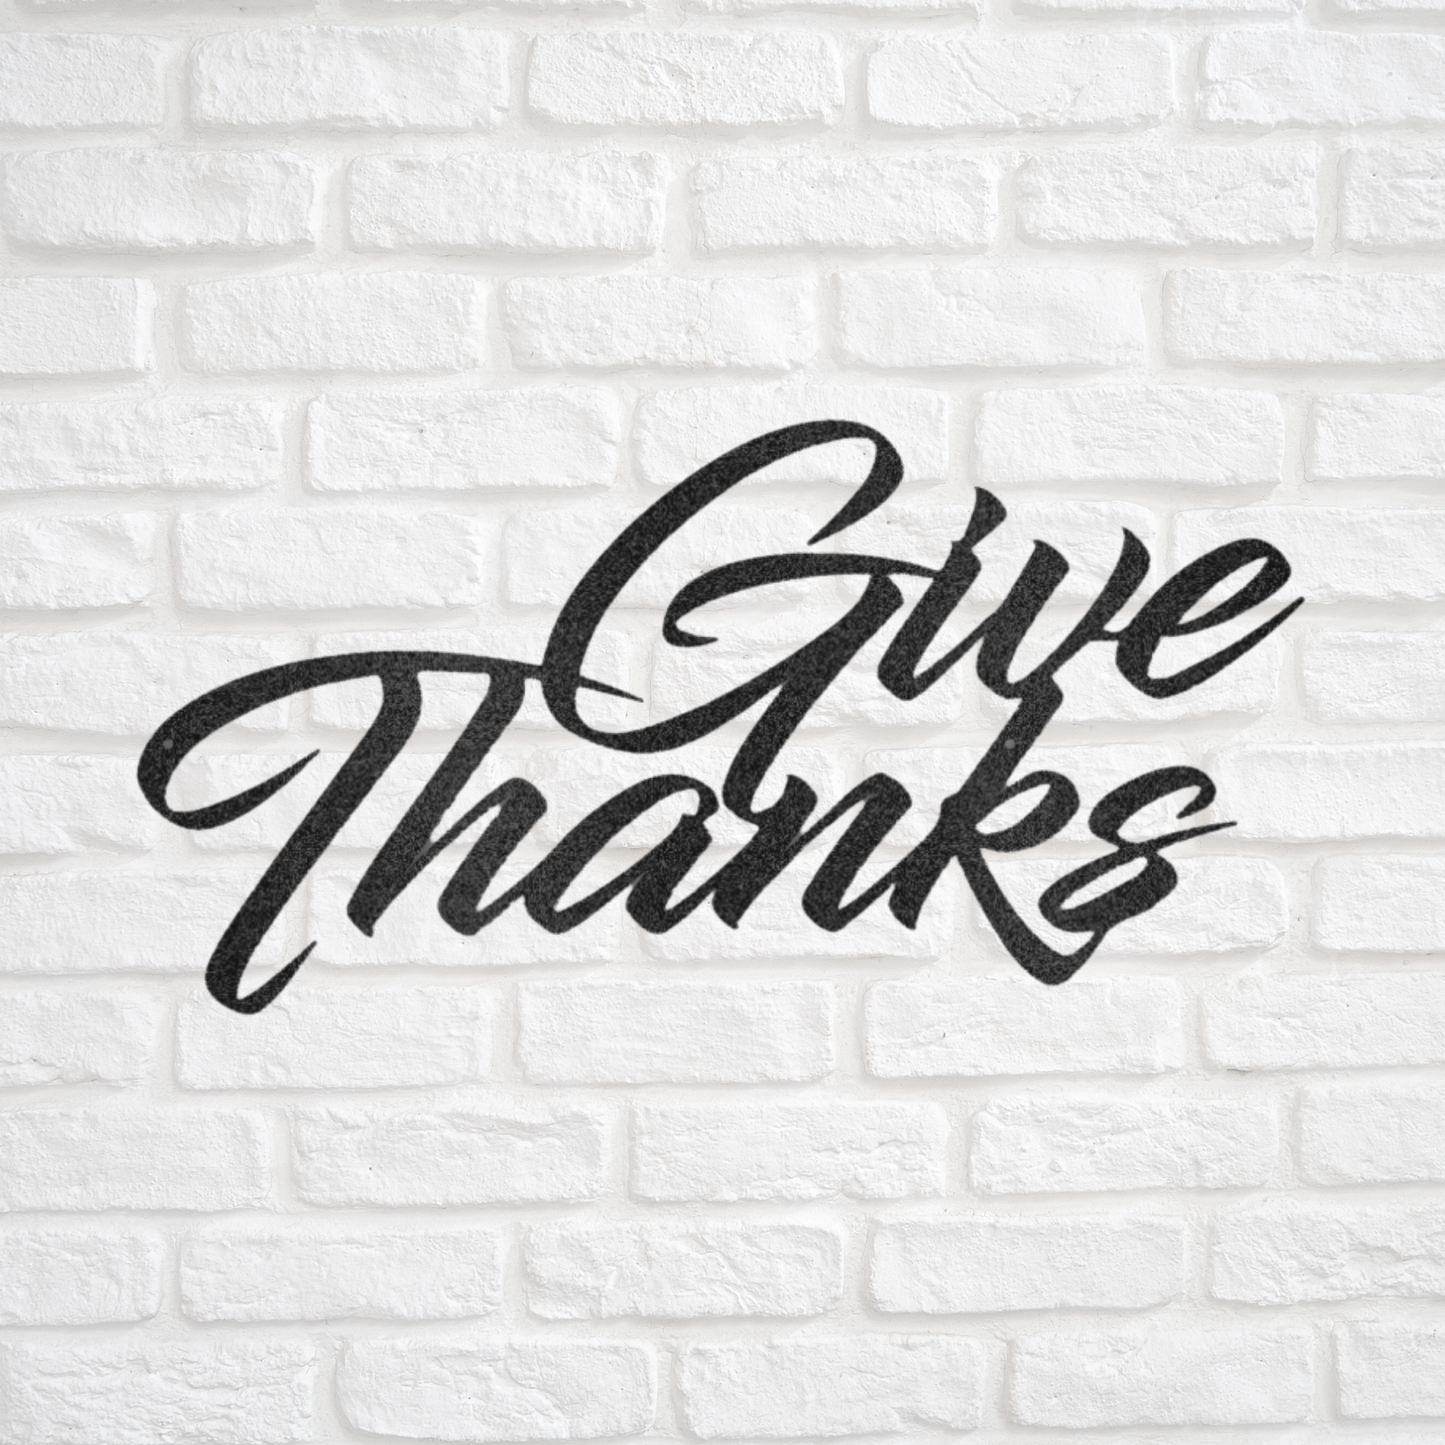 Give Thanks - Custom Metal Sign - Christian Metal Wall Art, Christian Artwork